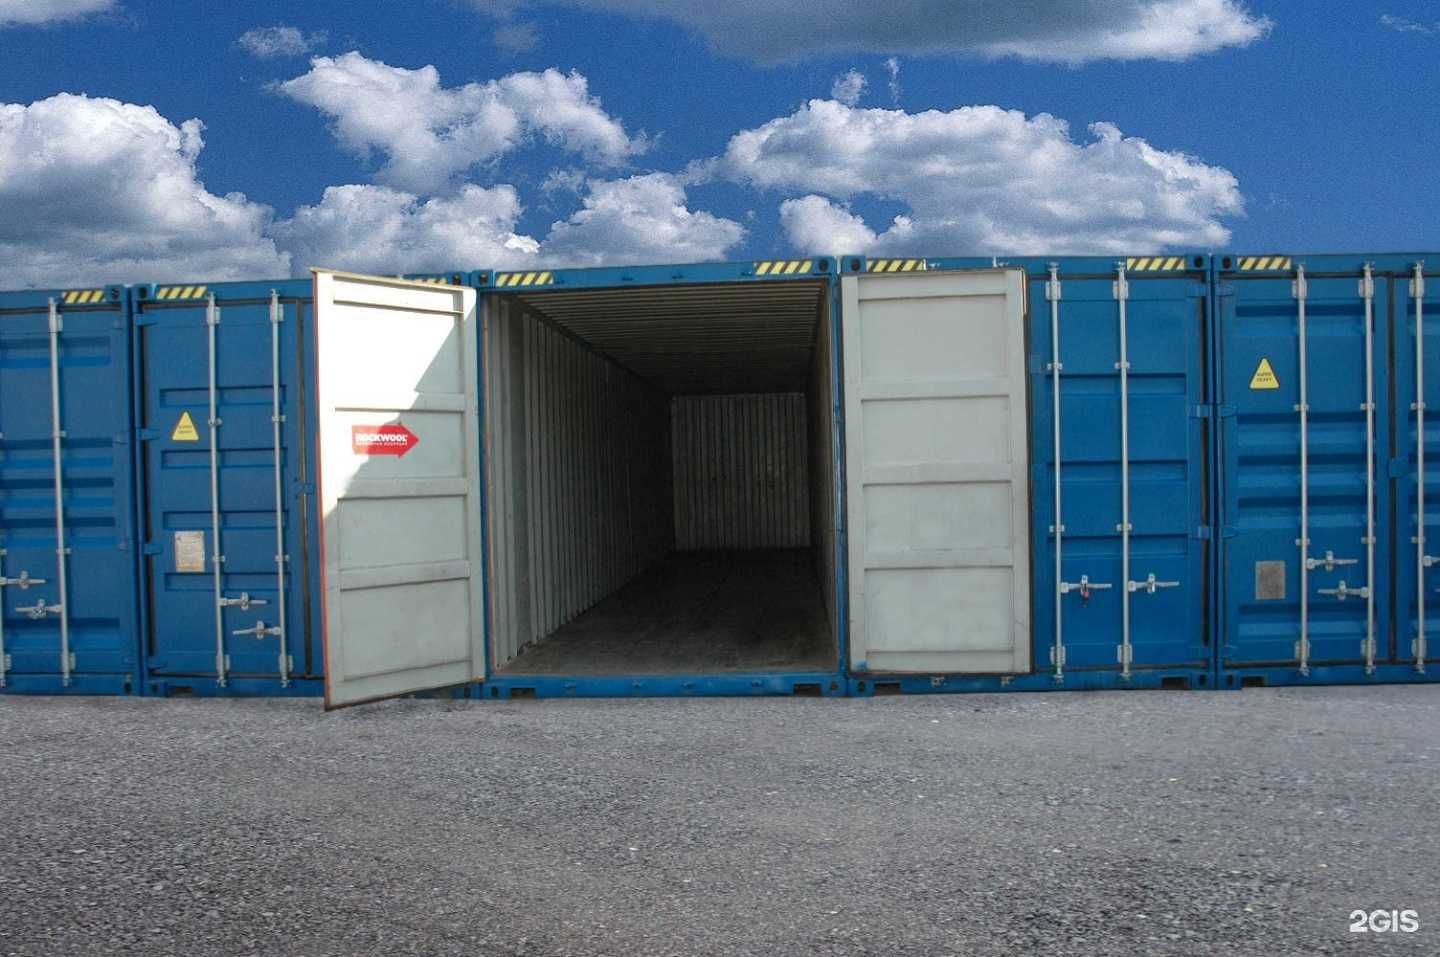 Склад контейнер, контейнер под склад, Ижарага контейнер. 12 метровый